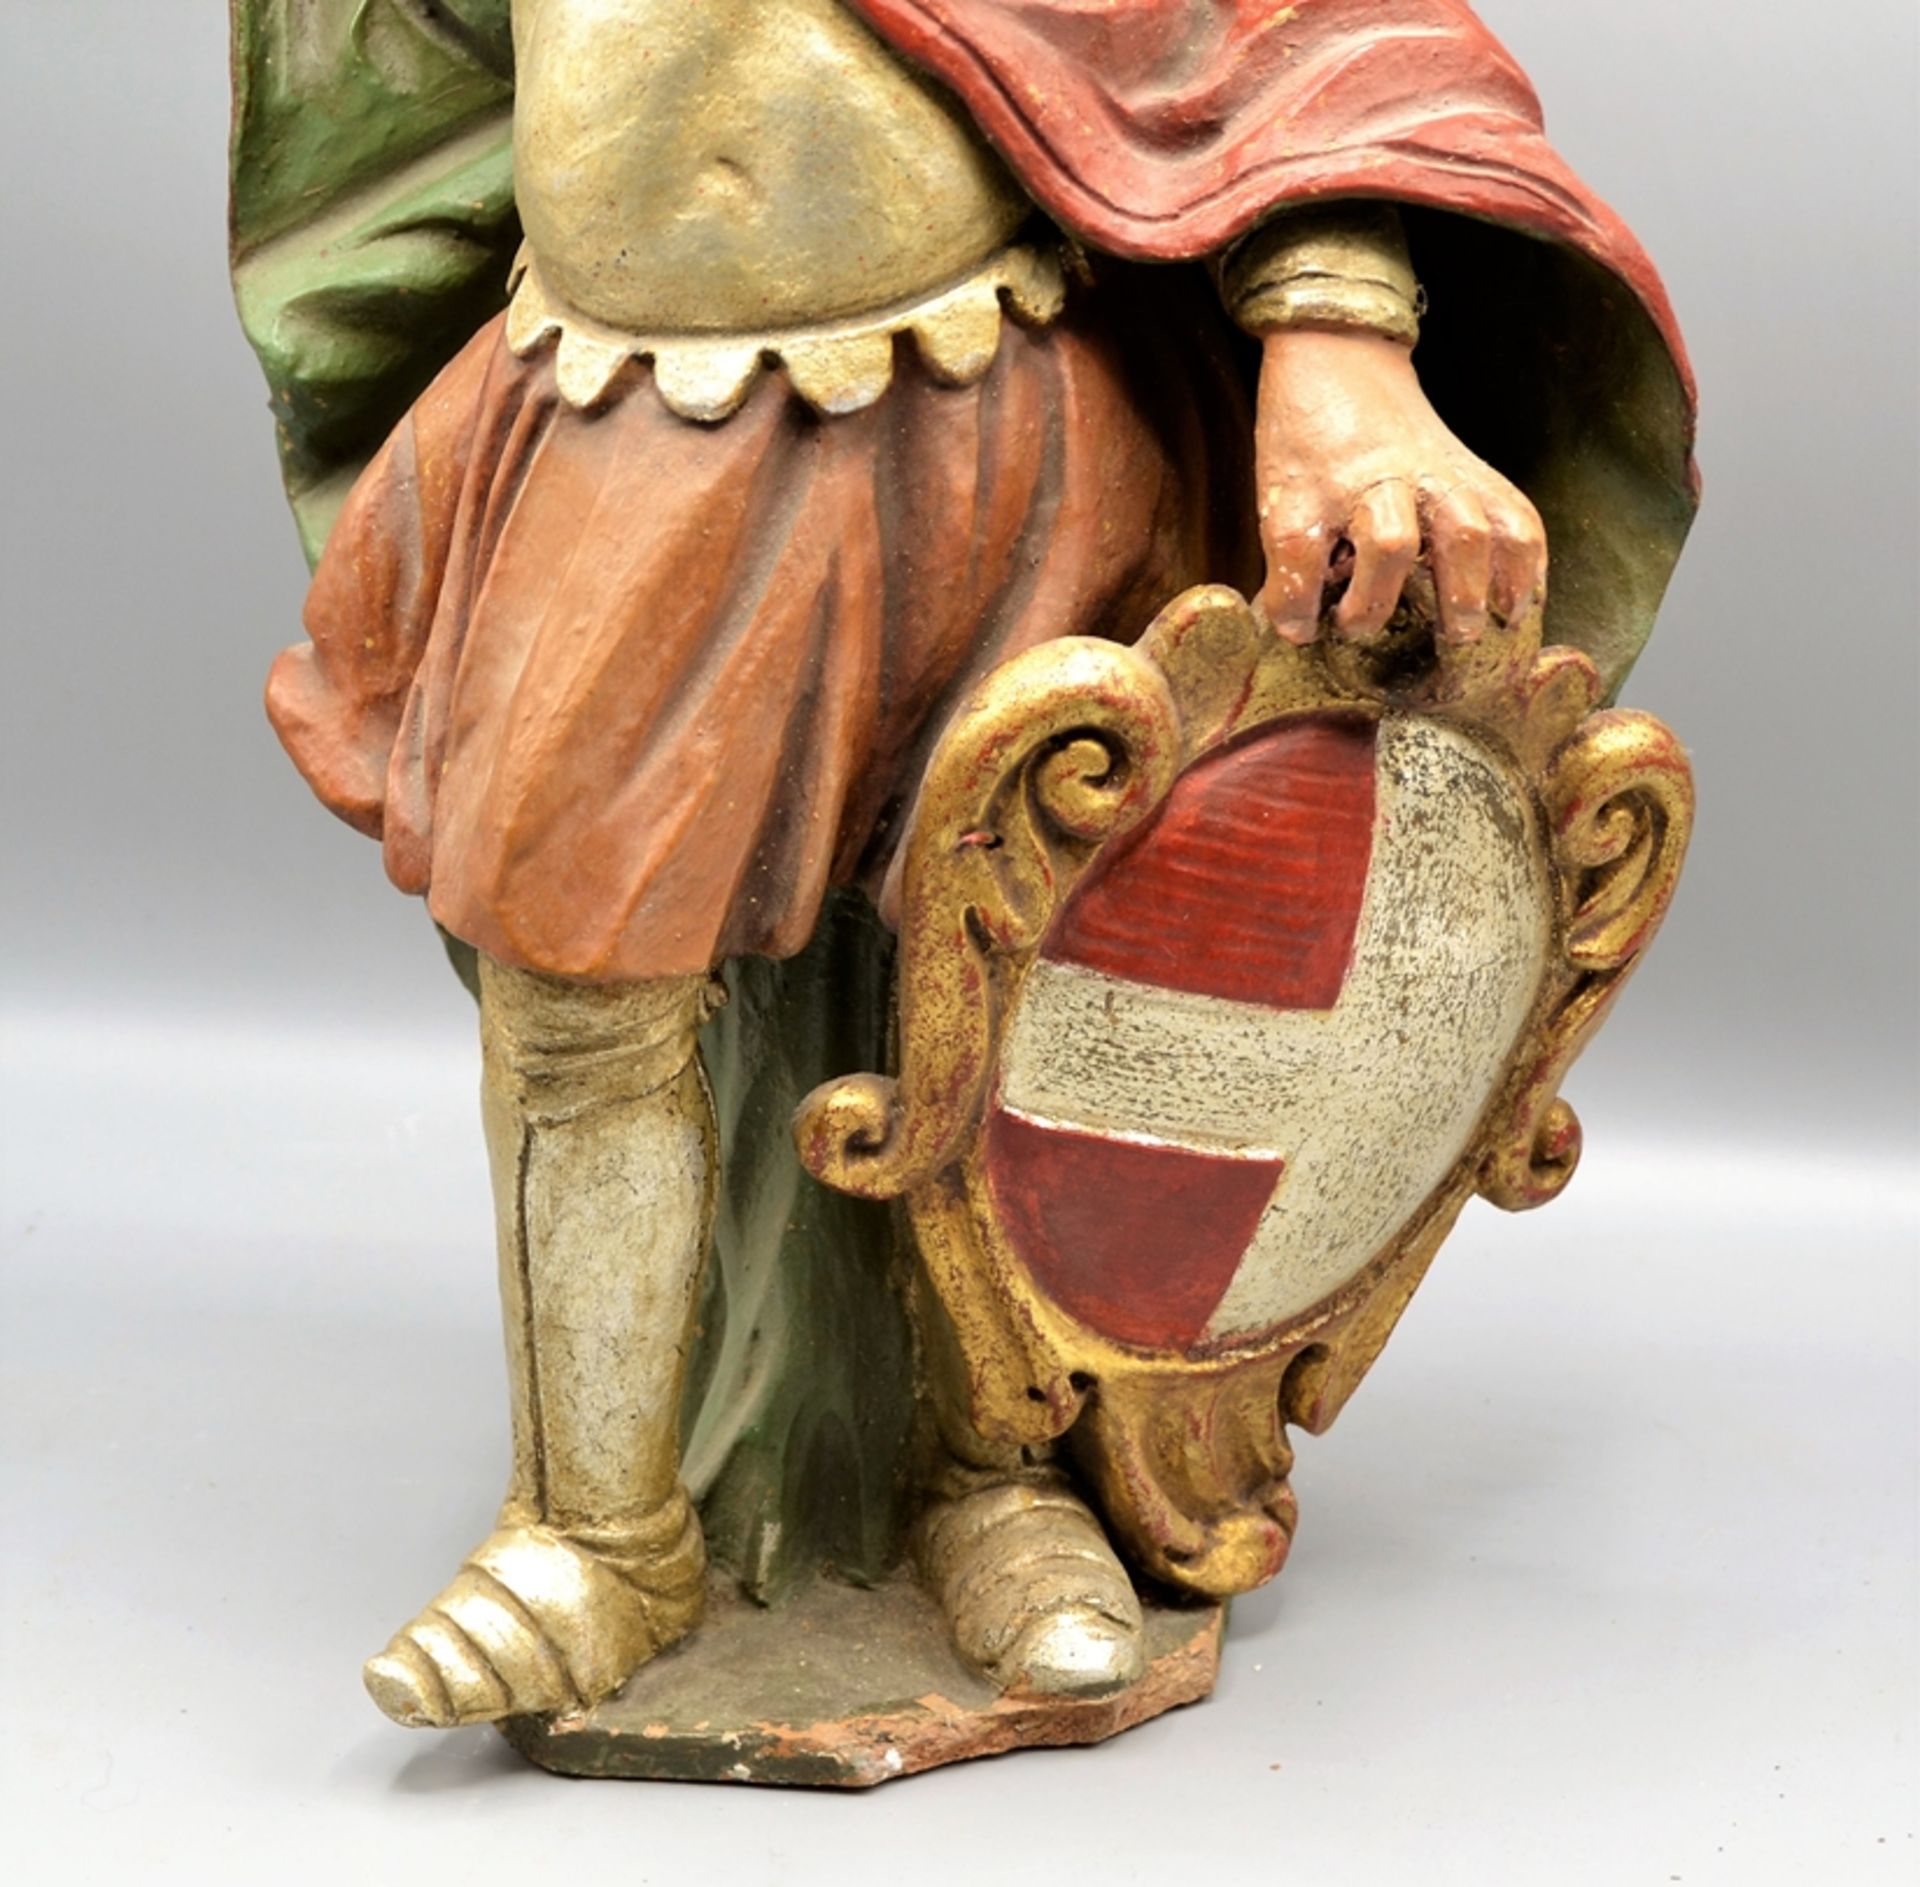 Ritterheiliger Terracotta um 1800 Wasserburg ? ca. 54 cm, Finger re. Hand beschädigt - Bild 3 aus 3